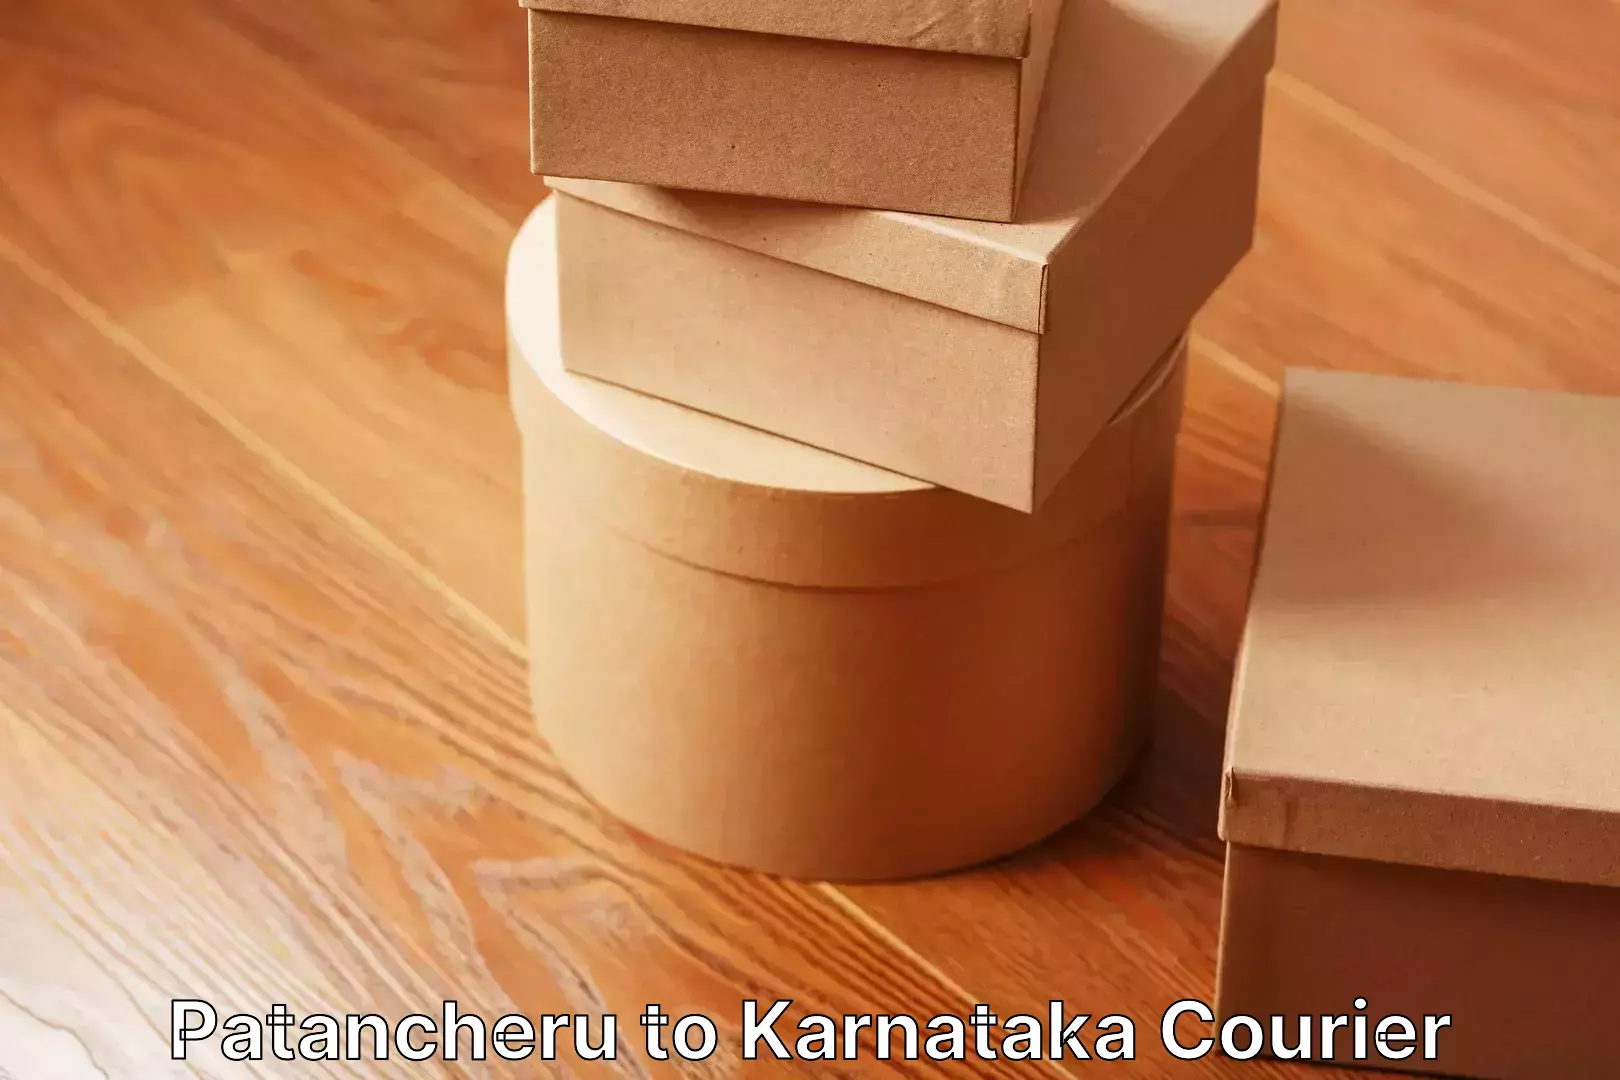 Efficient furniture transport Patancheru to Karnataka